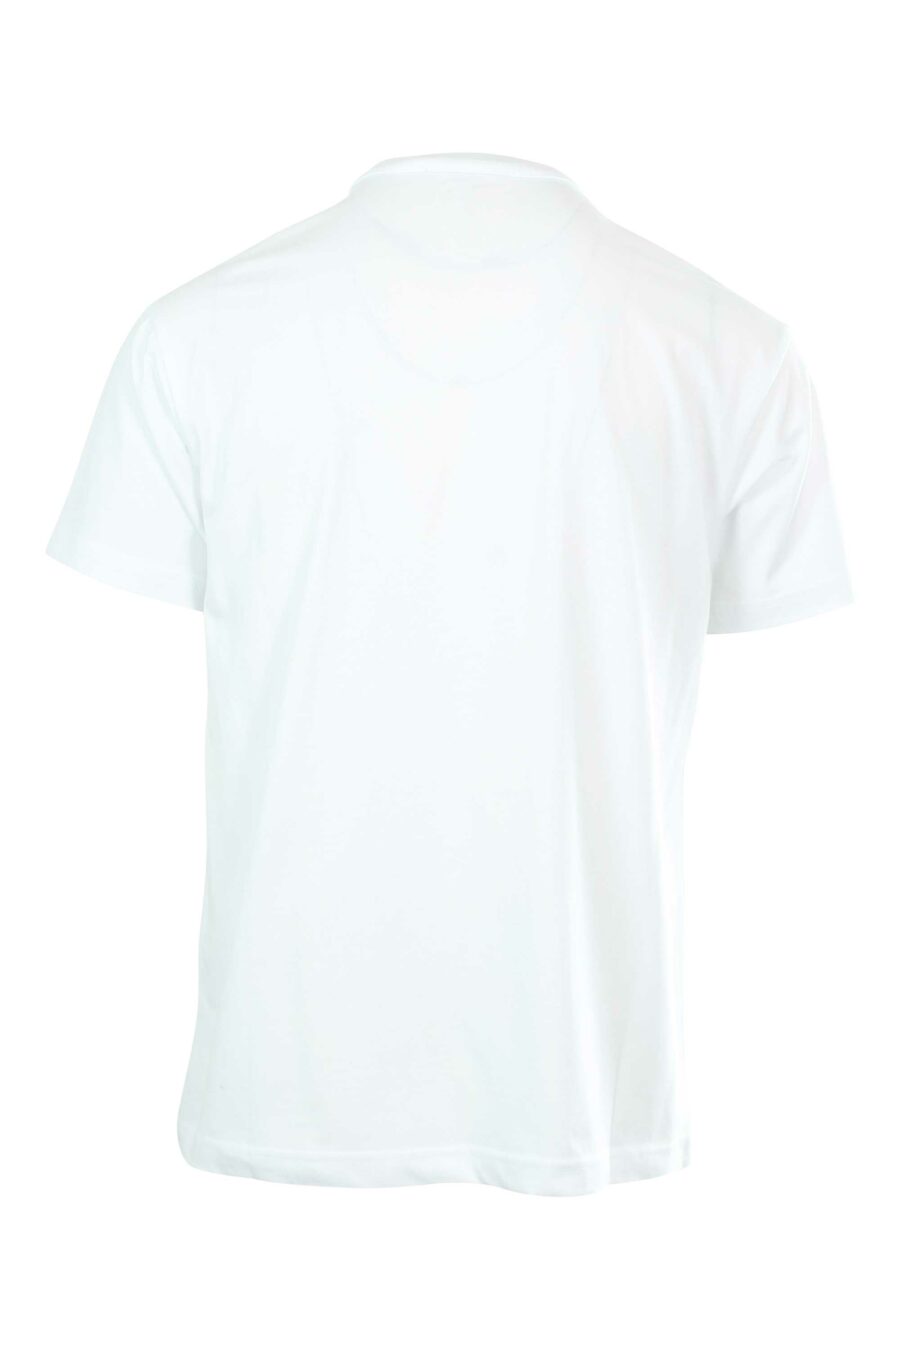 Weißes T-Shirt mit kontrastierendem Maxilogo - 8052019235371 2